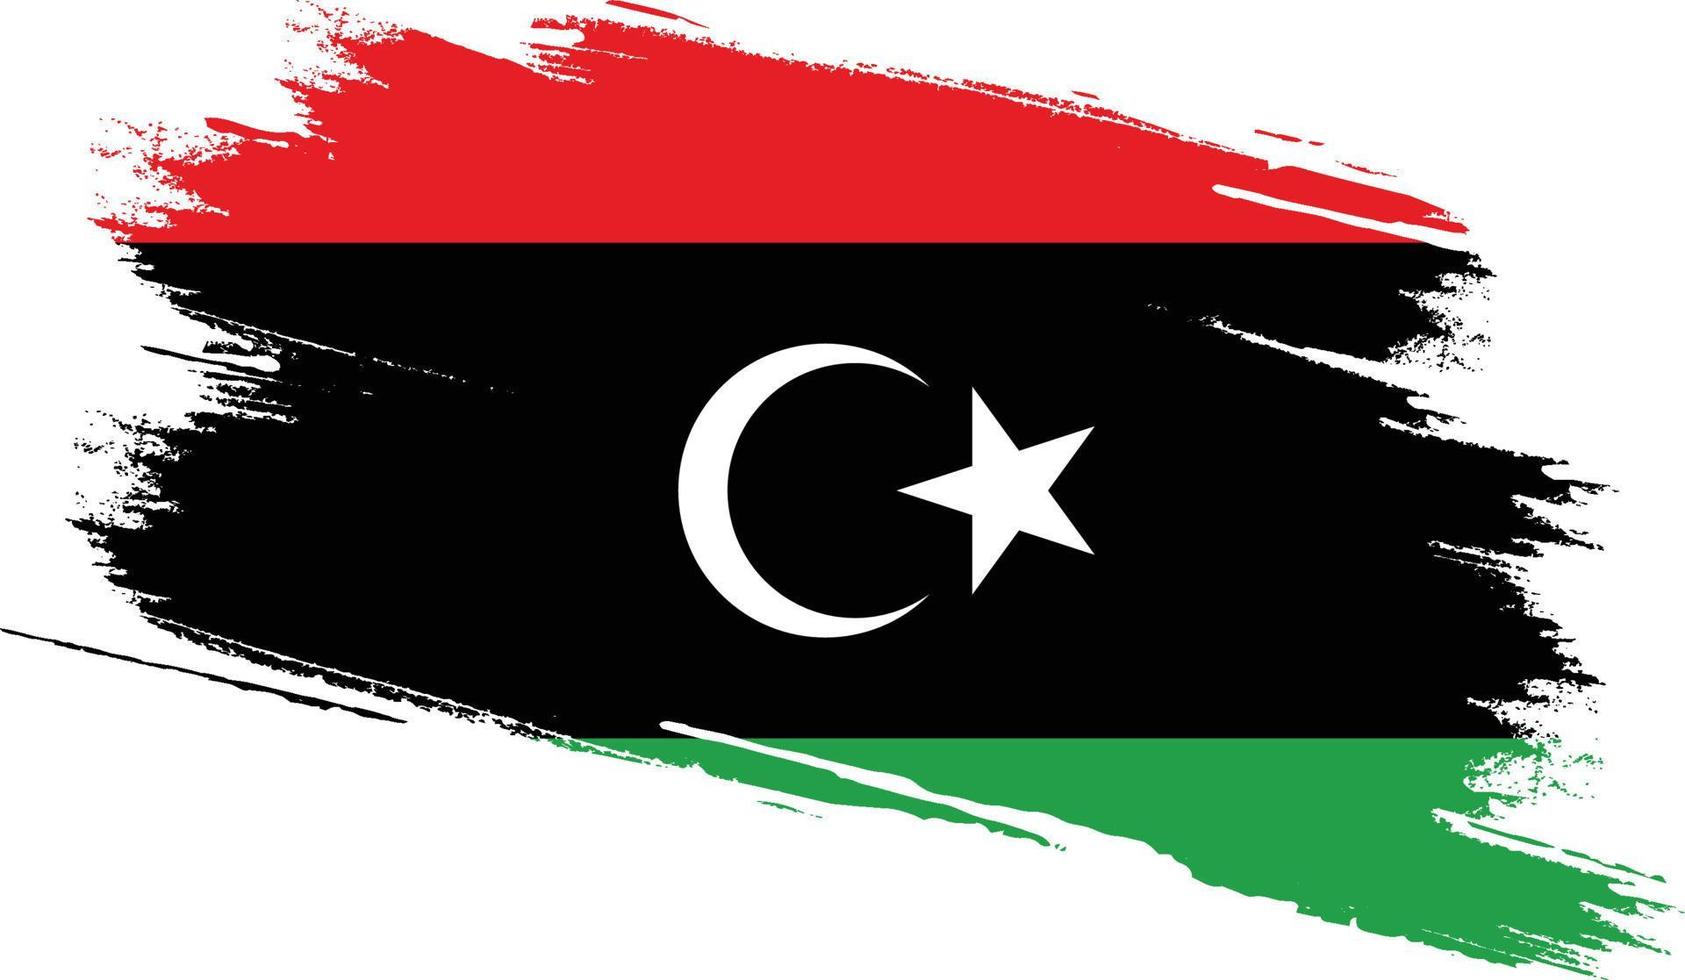 drapeau de la libye avec texture grunge vecteur